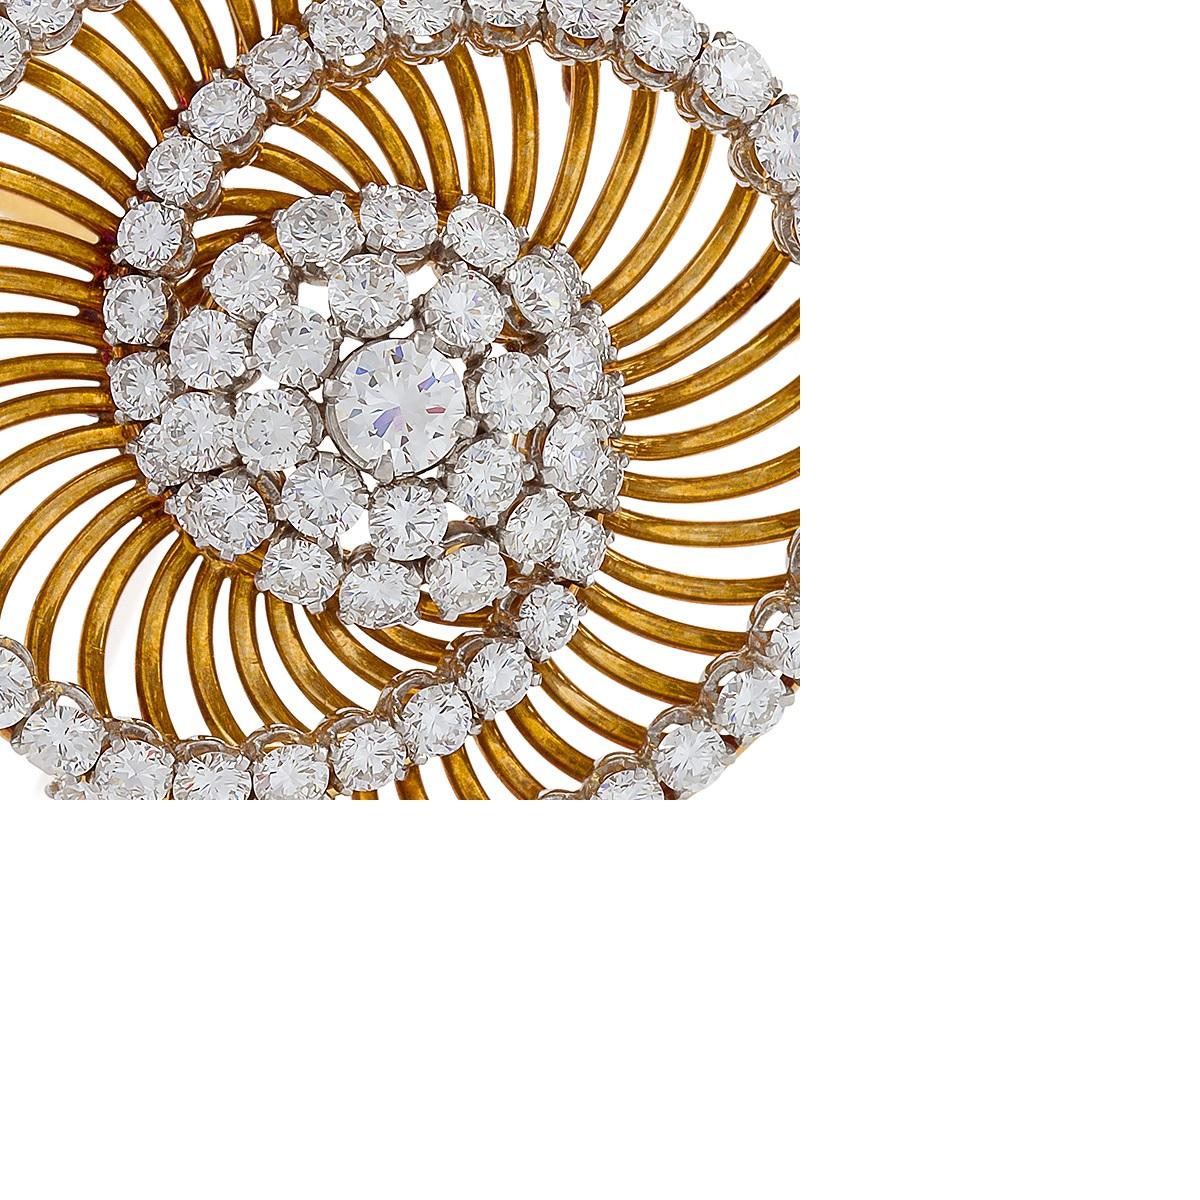 Diese faszinierende Brosche von Bulgari ist mit sechseinhalb Karat runden Diamanten im Brillantschliff besetzt, die in Platin auf einer Fassung aus Gelbgolddraht gefasst sind. Die dynamische, wirbelnde Form mit sich überschneidenden Bögen ist als